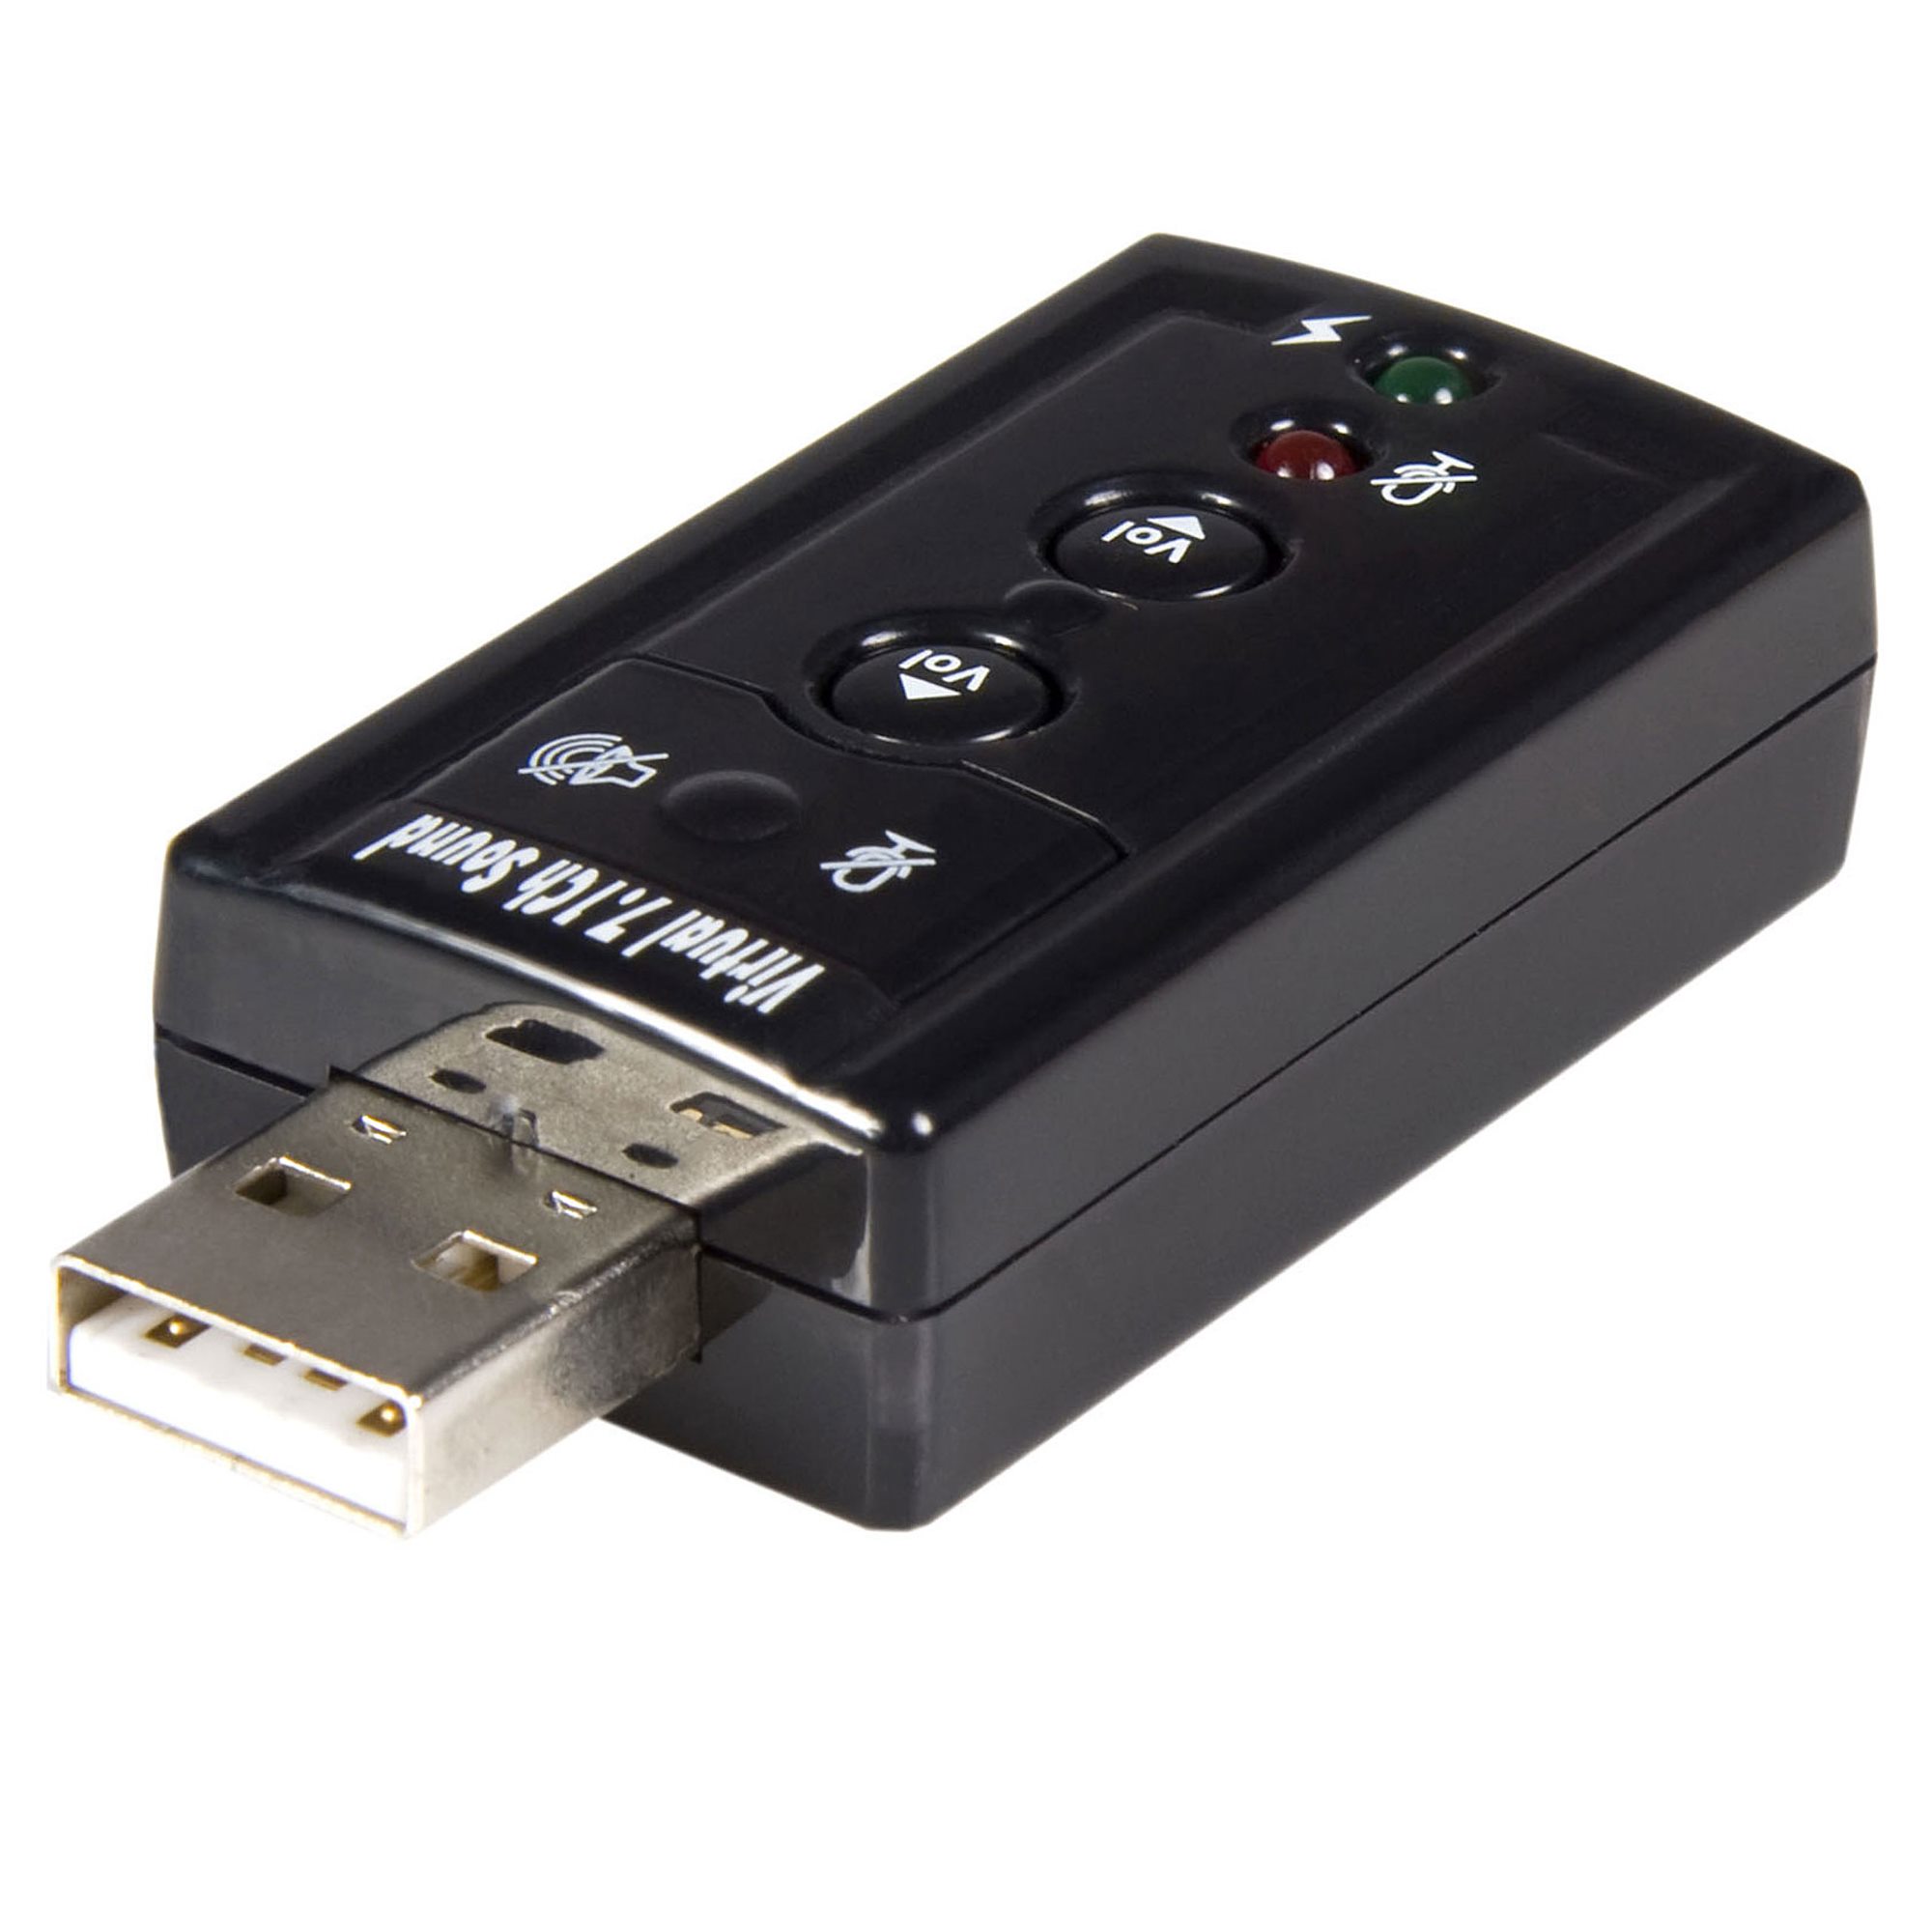 N/ USB Externo de 3,5 mm Adaptador de Tarjeta de Sonido de 7.1 Canales de Audio 3D del micrófono del Auricular de reemplazo para portátil PC de Escritorio POCNQYL 